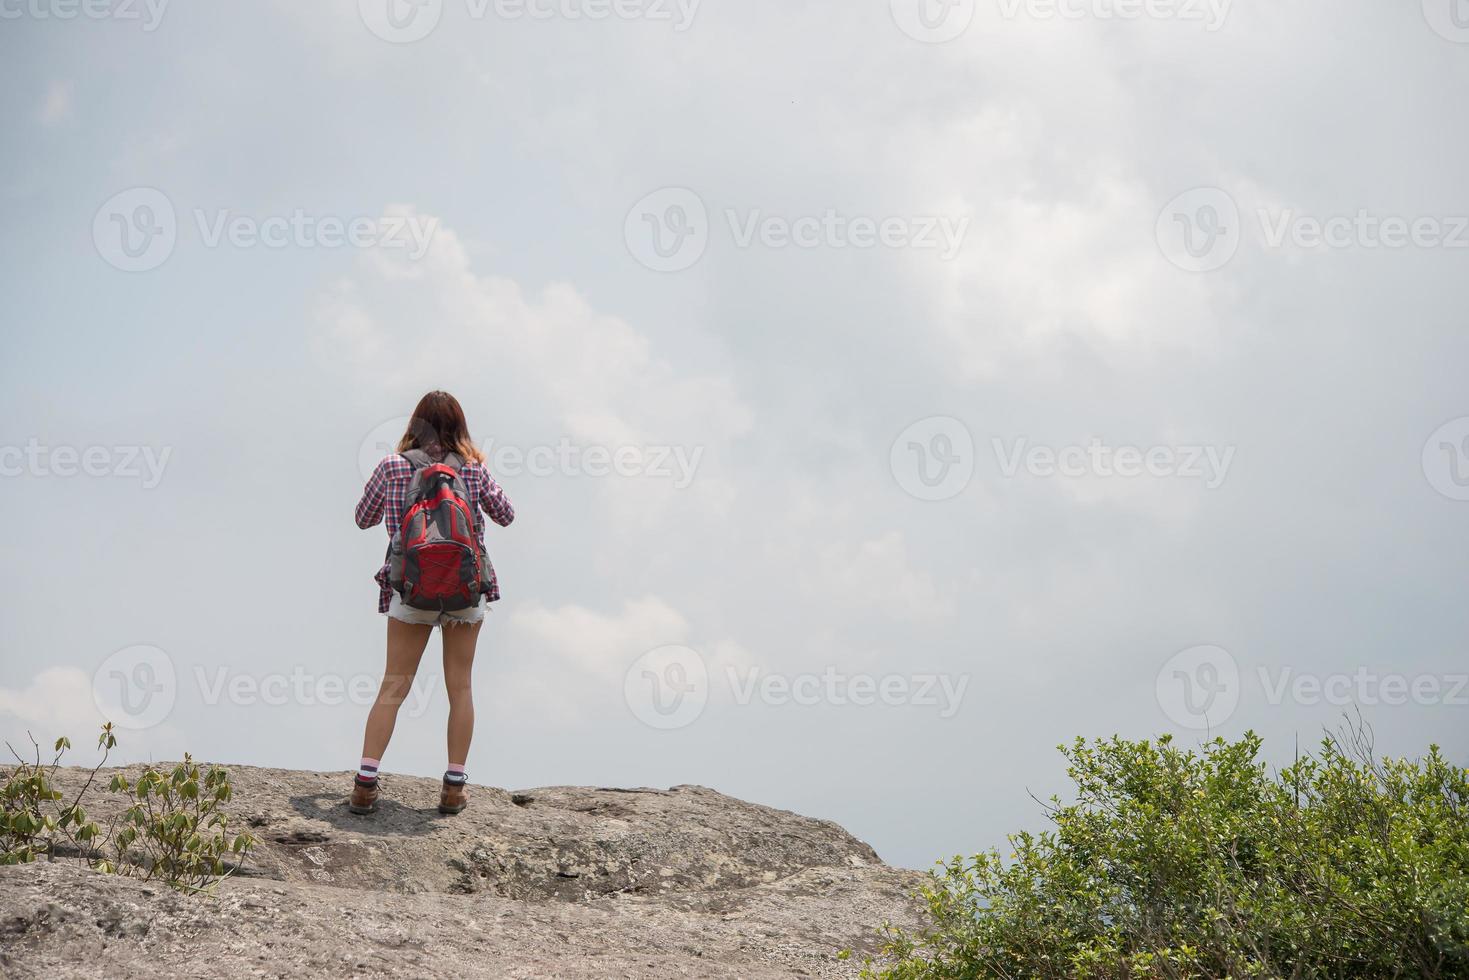 vandrare med ryggsäck som står på toppen av ett berg och njuter av naturen foto